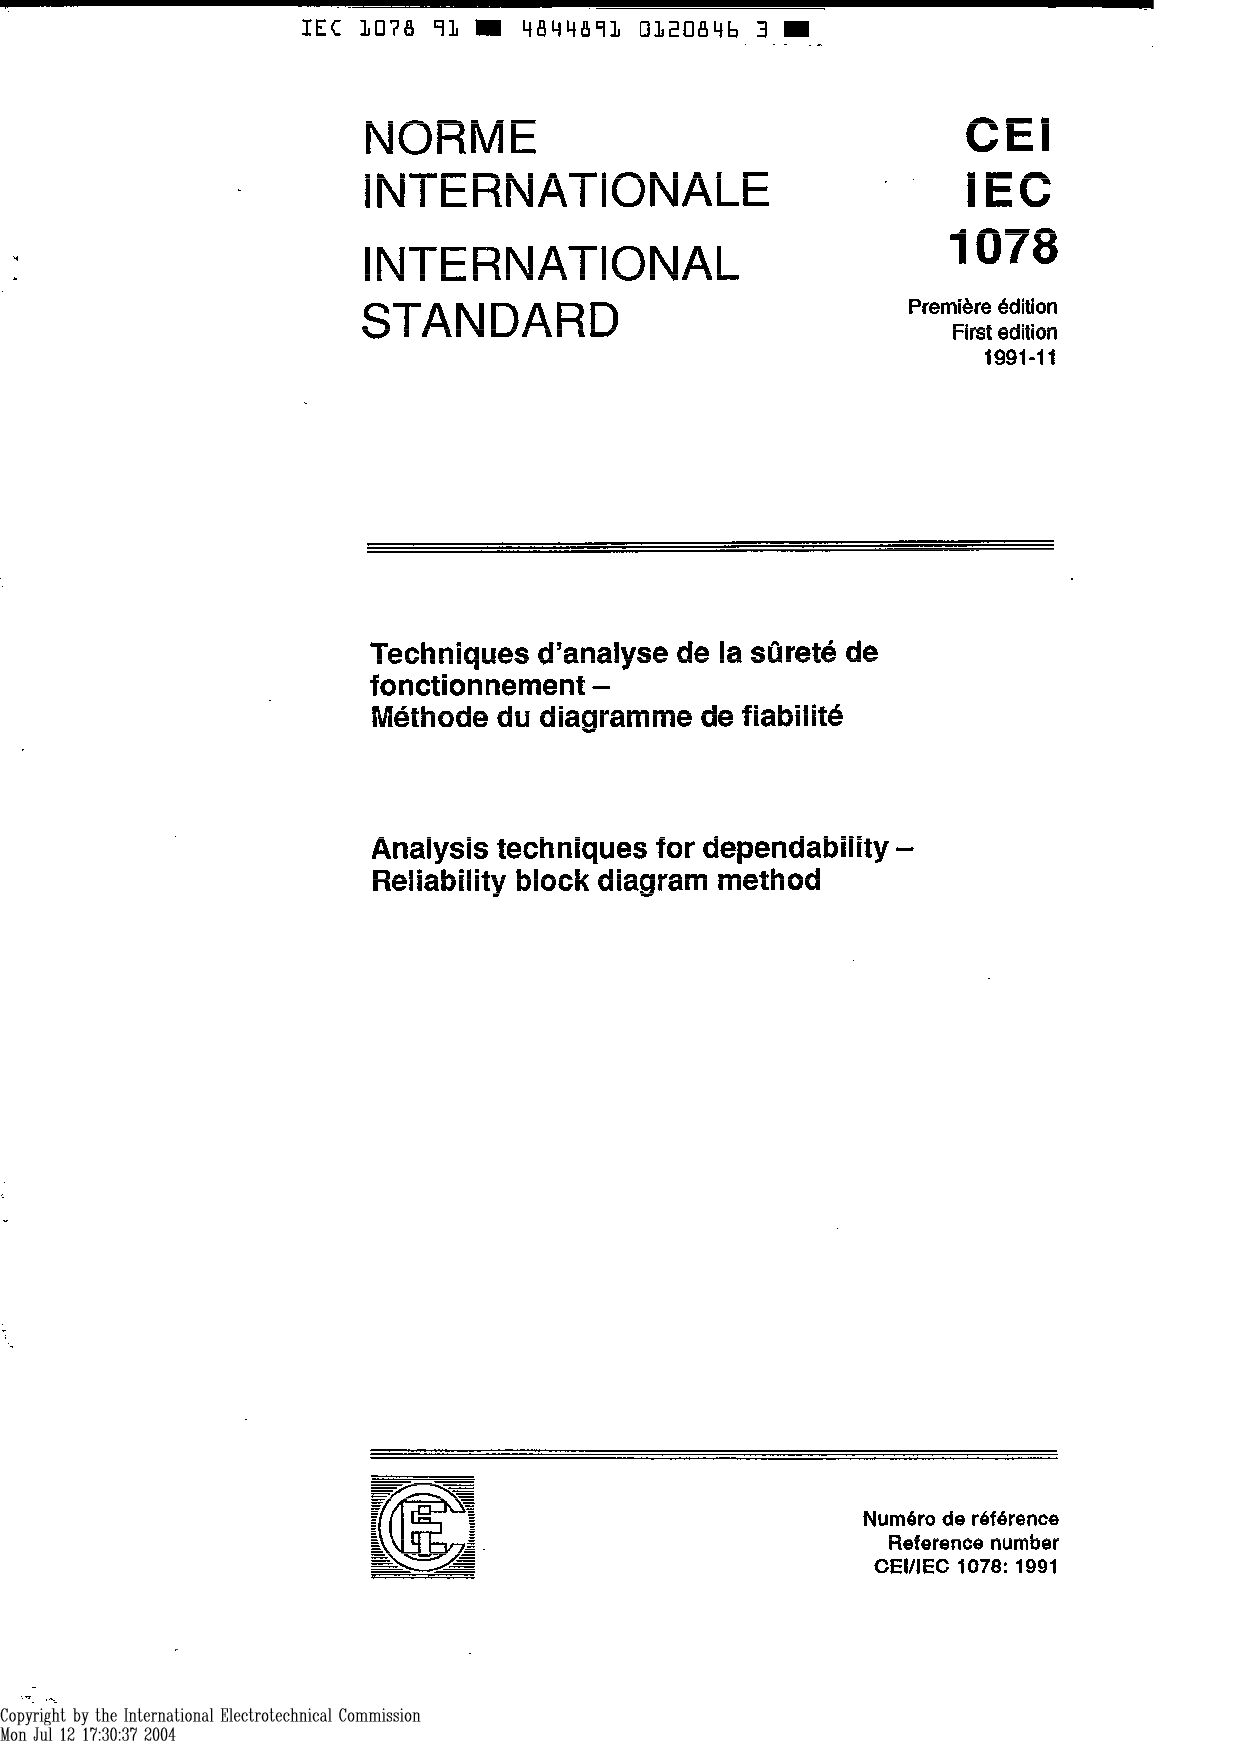 IEC 61078:1991封面图